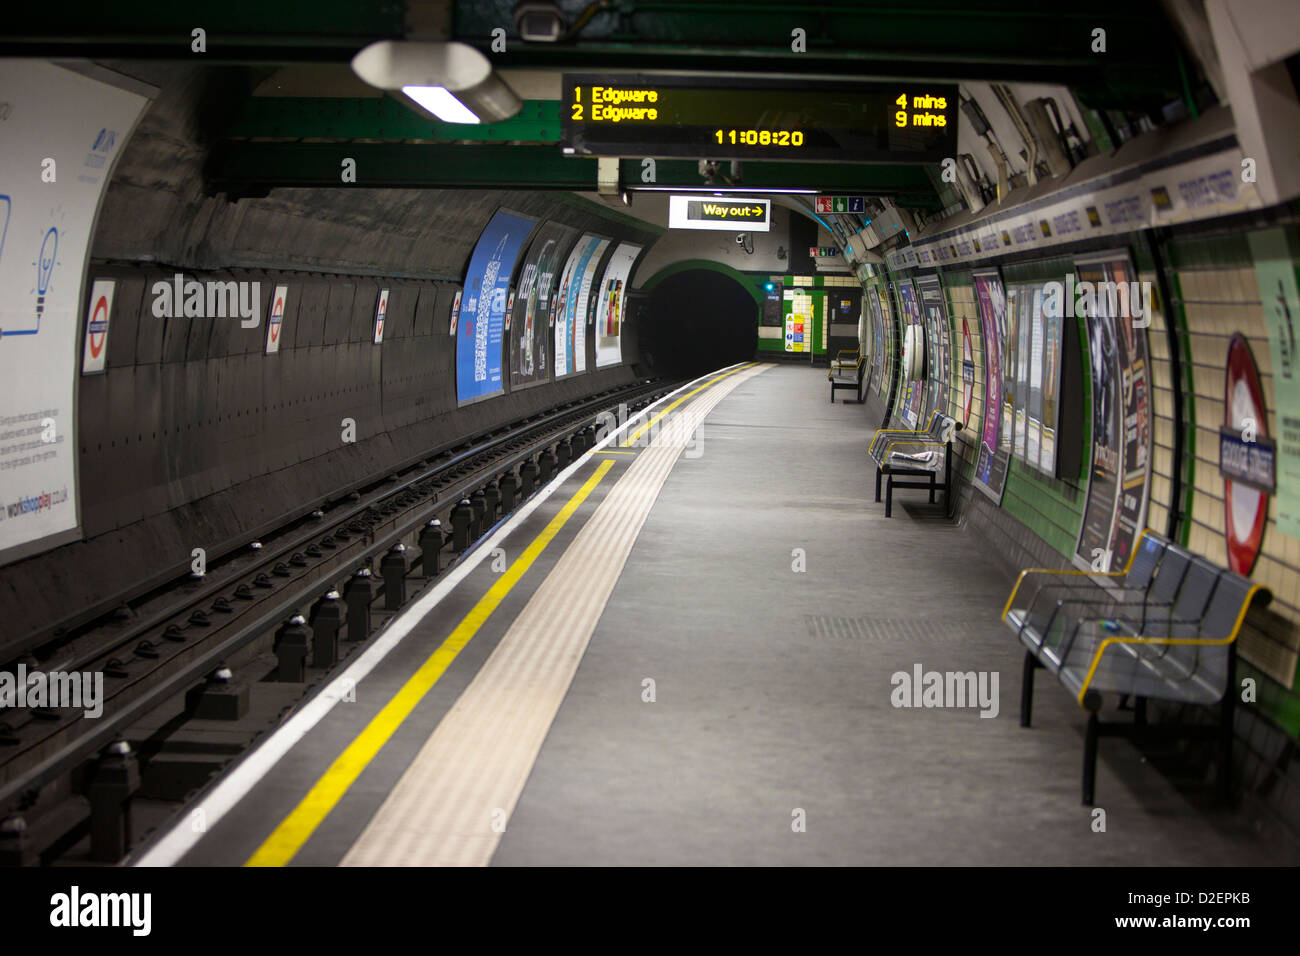 La plate-forme de métro déserte, London, England, UK Banque D'Images